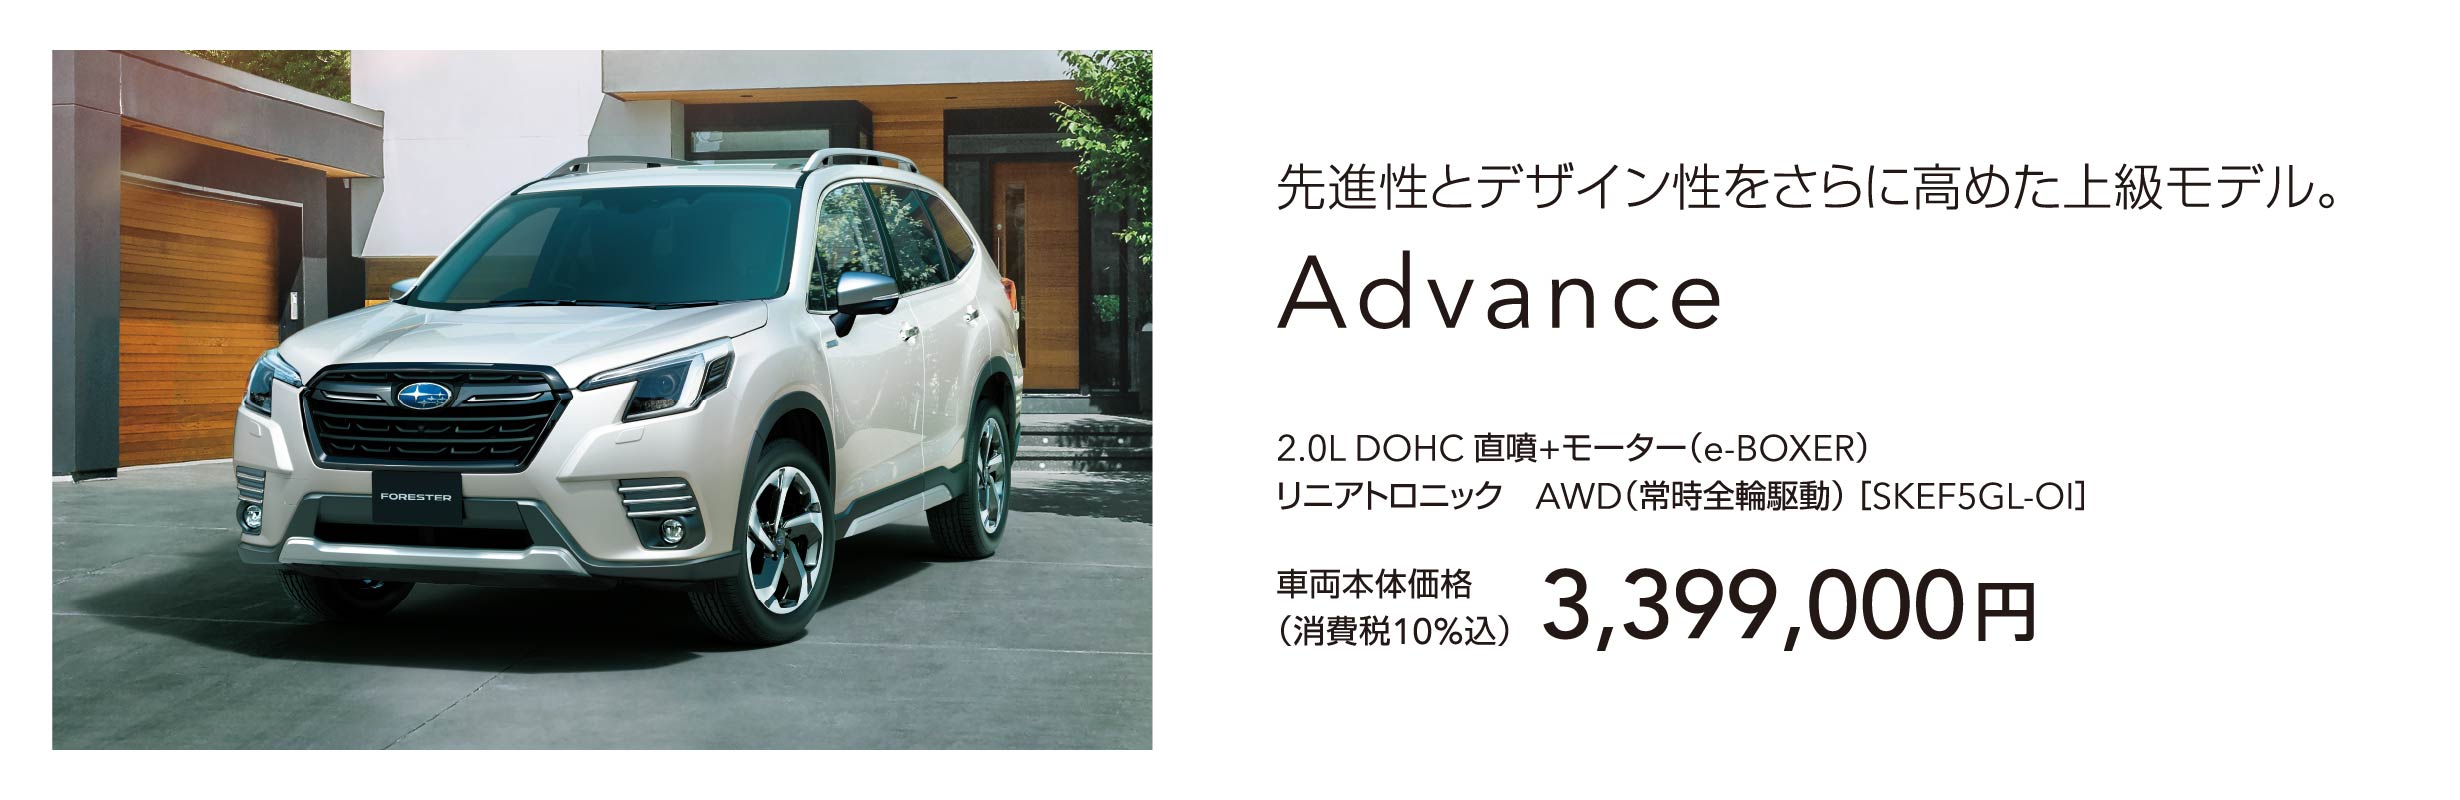 先進性とデザイン性をさらに高めた上級モデル。Advance 車両本体価格（消費税10%込）3,399,000円